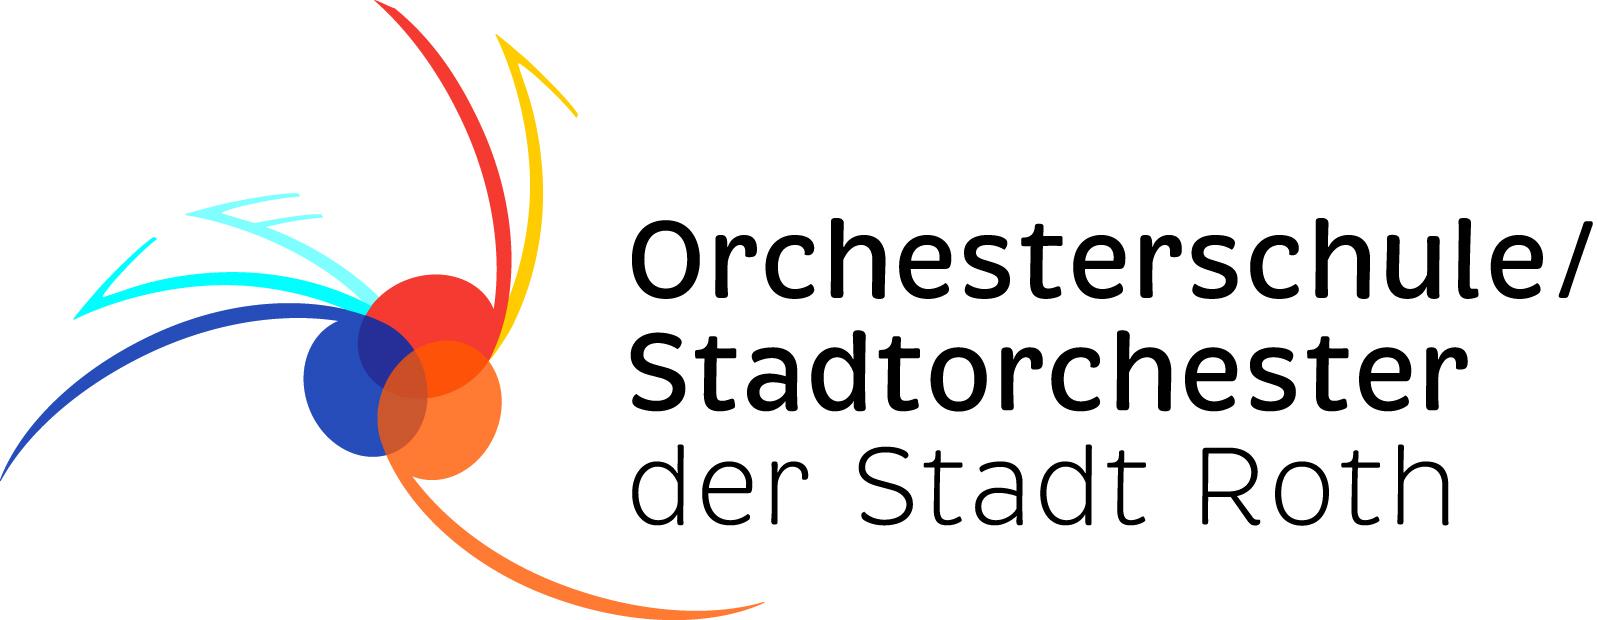 Orchesterschule der Stadt Roth